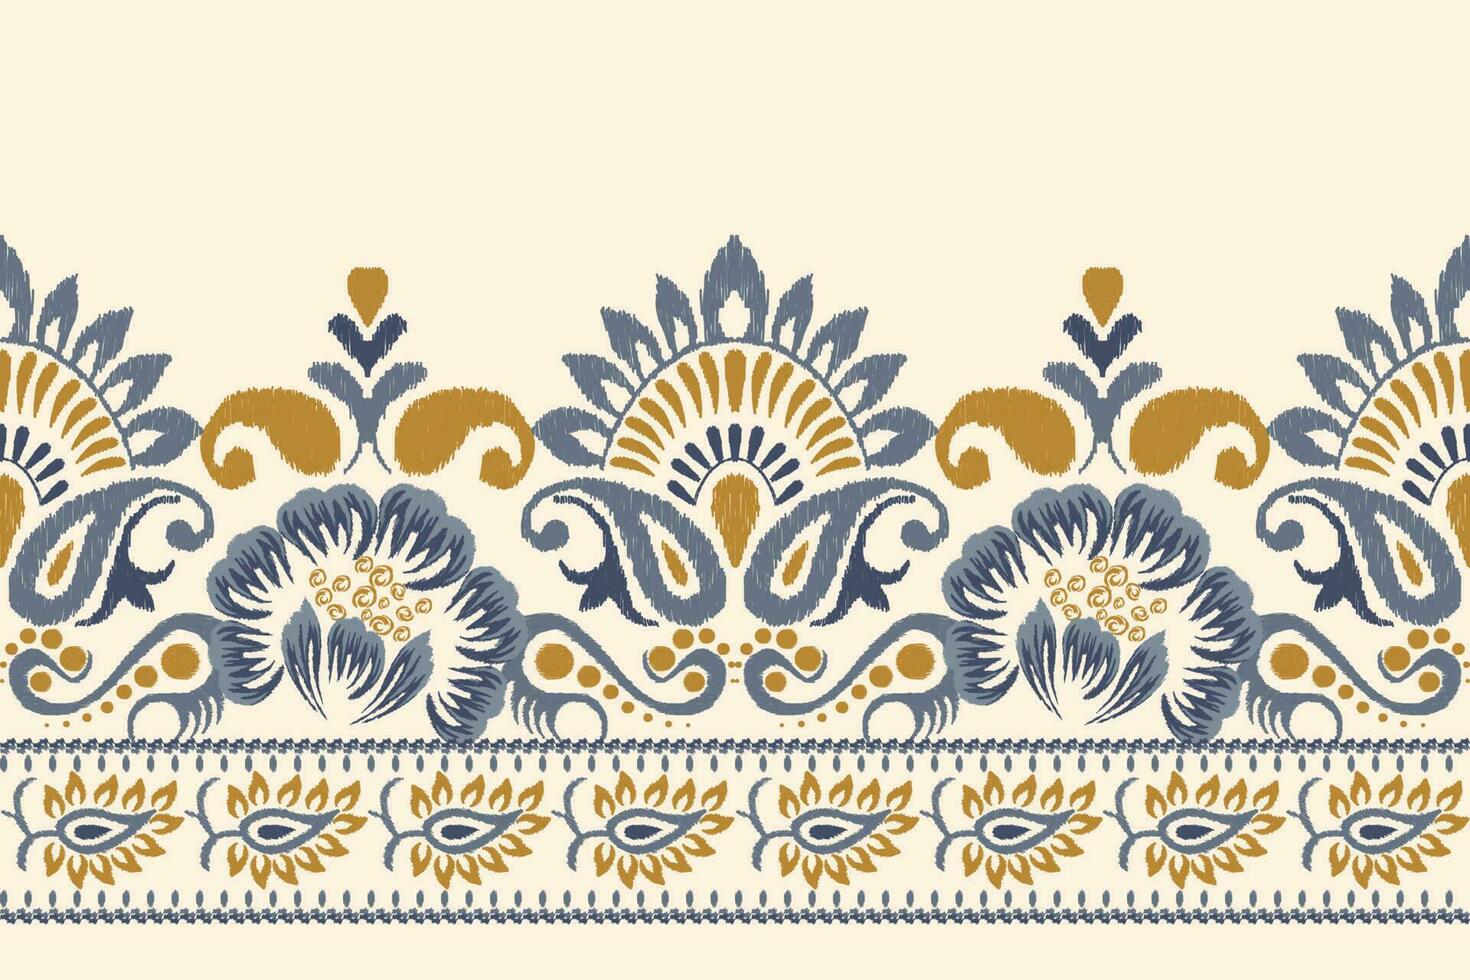 Ikat Blumen- Paisley Stickerei auf Sahne hintergrund.ikat ethnisch orientalisch Muster traditionell.aztekisch Stil abstrakt Vektor illustration.design zum Textur, Stoff, Kleidung, Verpackung, Dekoration, Sarong, Schal